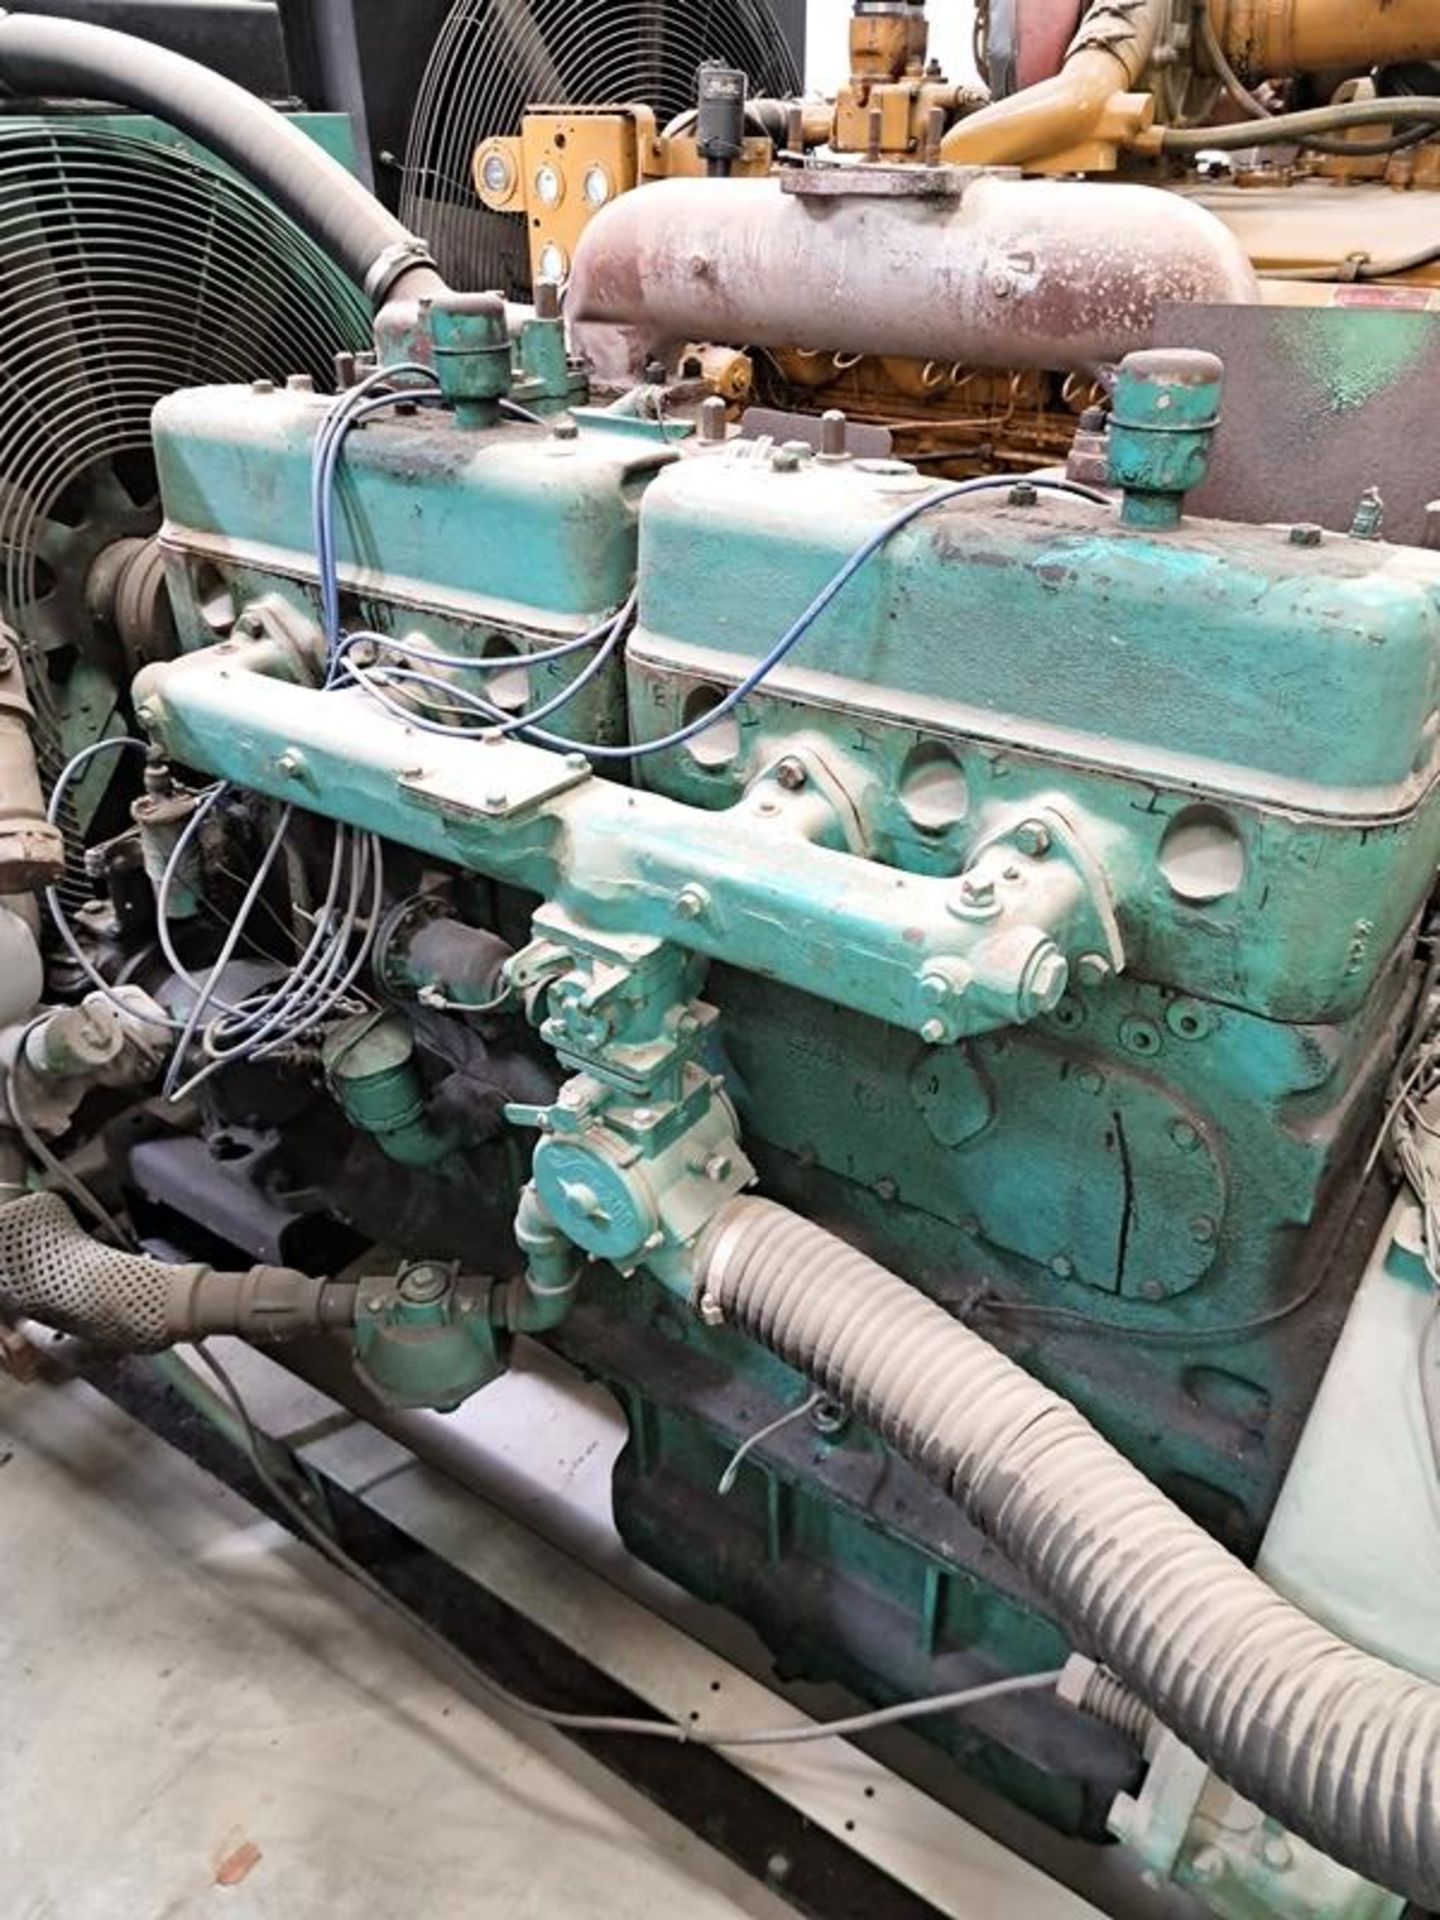 Waukesha Motor Co. Mdl. F1197GU, Size: 6Y4X61/2, Spec: G25904, Ser. #221711 Generator, inline 6 - Image 9 of 13